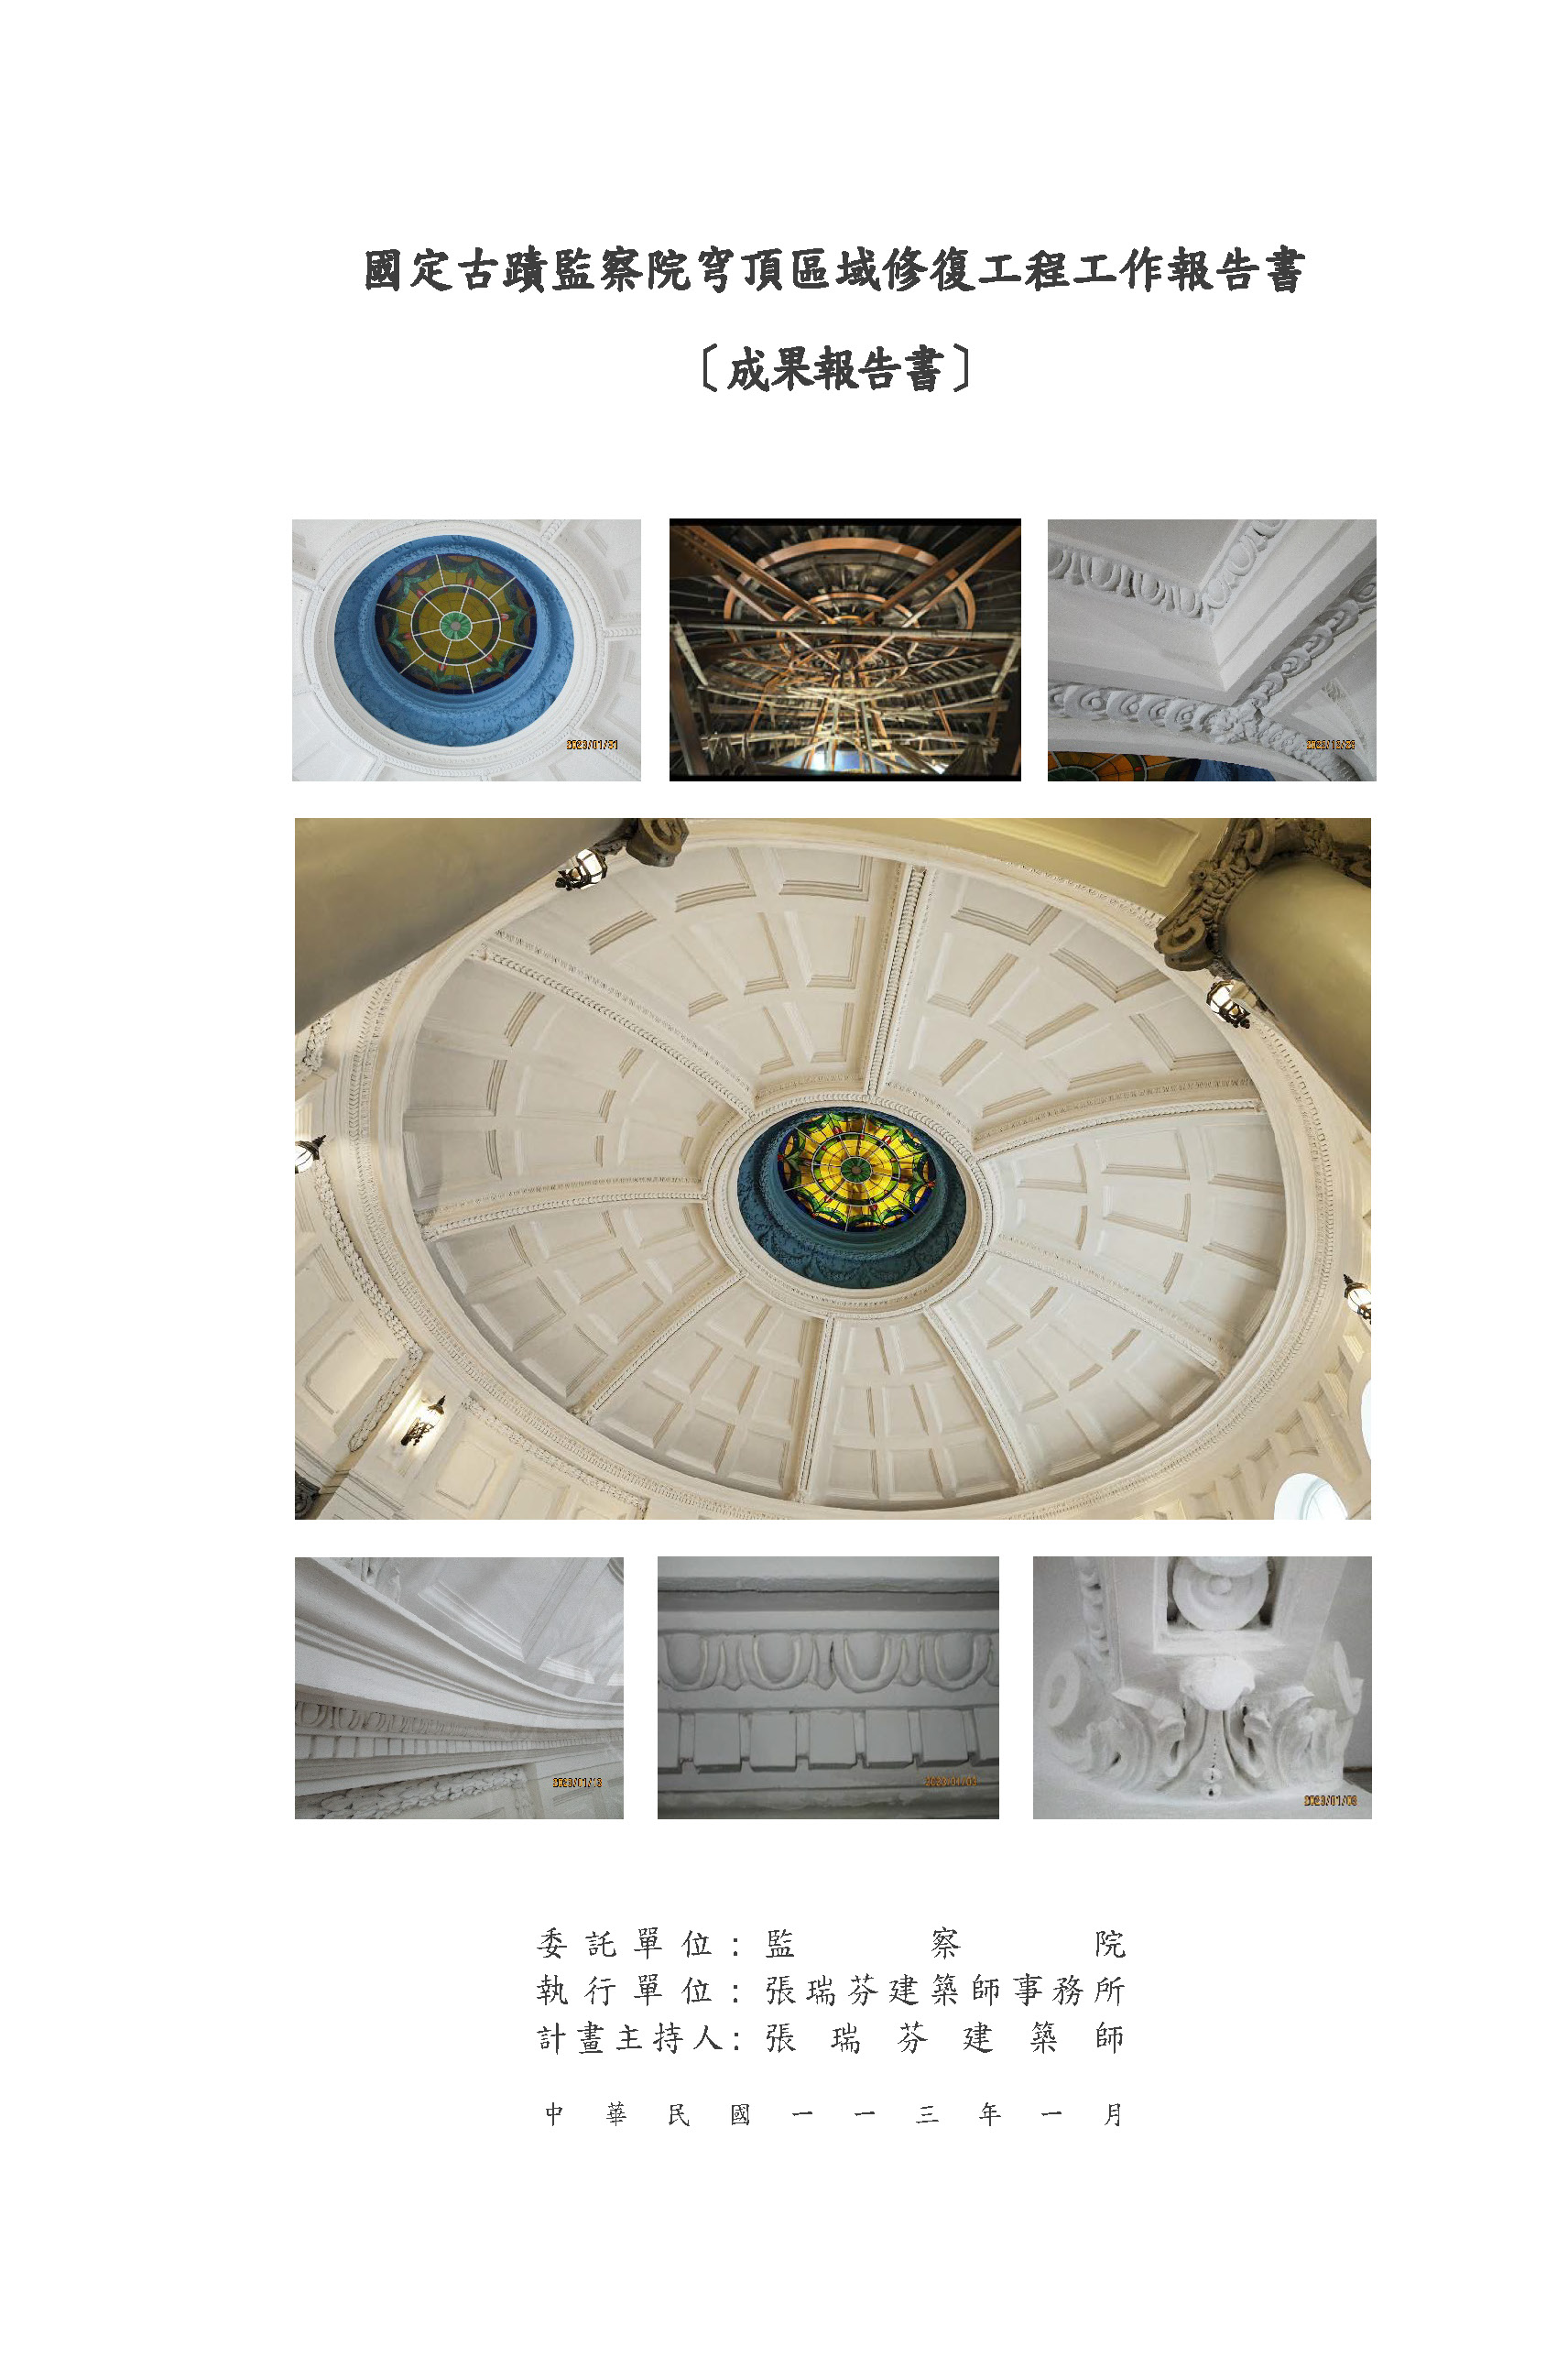 國定古蹟監察院穹頂區域修復工程工作報告書-成果報告書